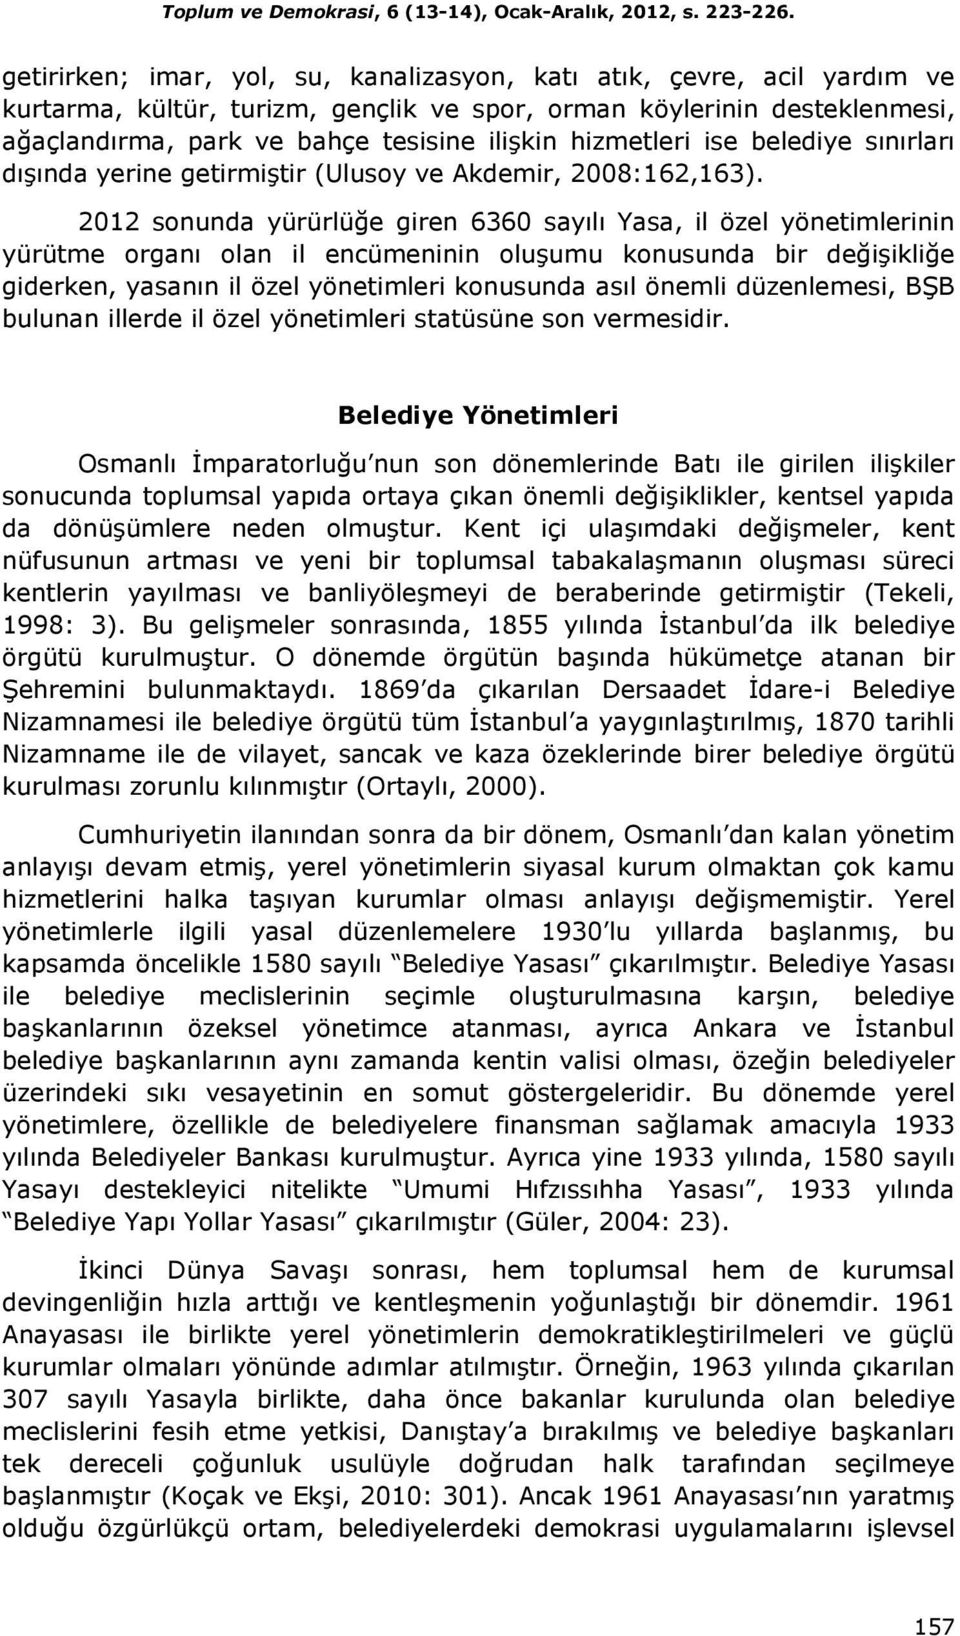 hizmetleri ise belediye sınırları dışında yerine getirmiştir (Ulusoy ve Akdemir, 2008:162,163).